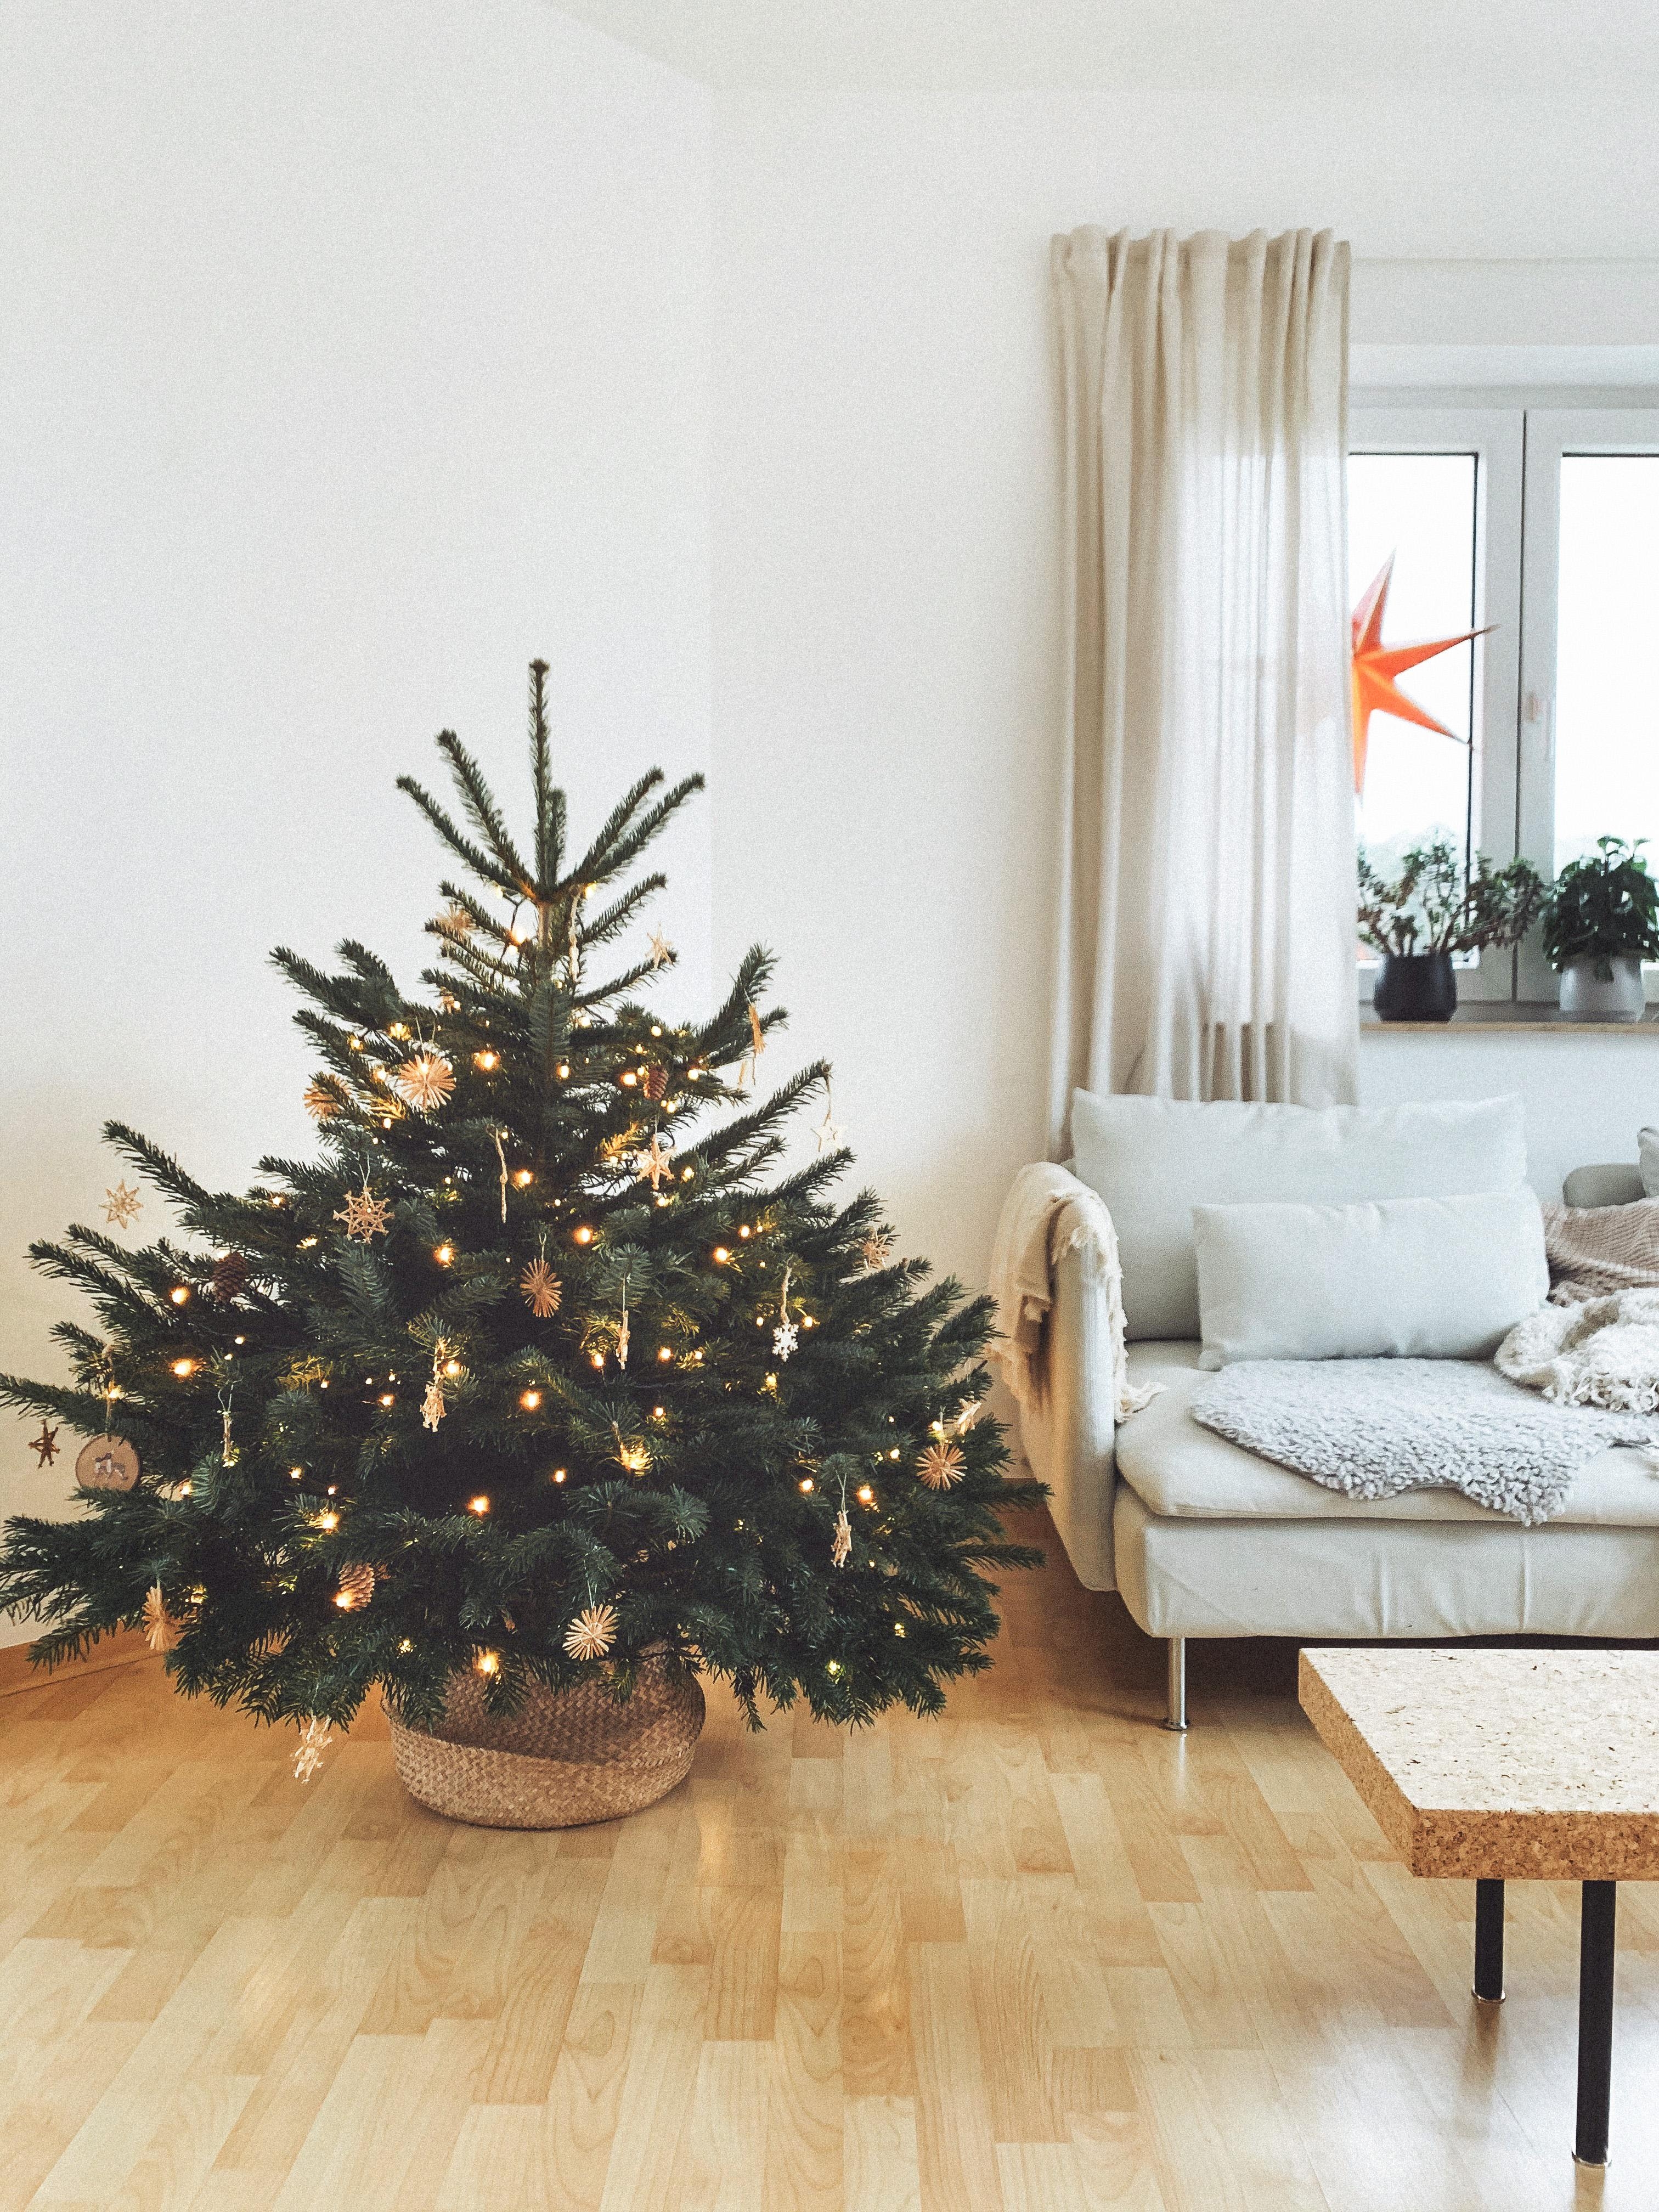 Weihnachtsbaumliebe. 🌲 #weihnachten #weihnachtsbaum #wohnzimmer #home #interior #couch #ikea #sinnerlig #söderhamn